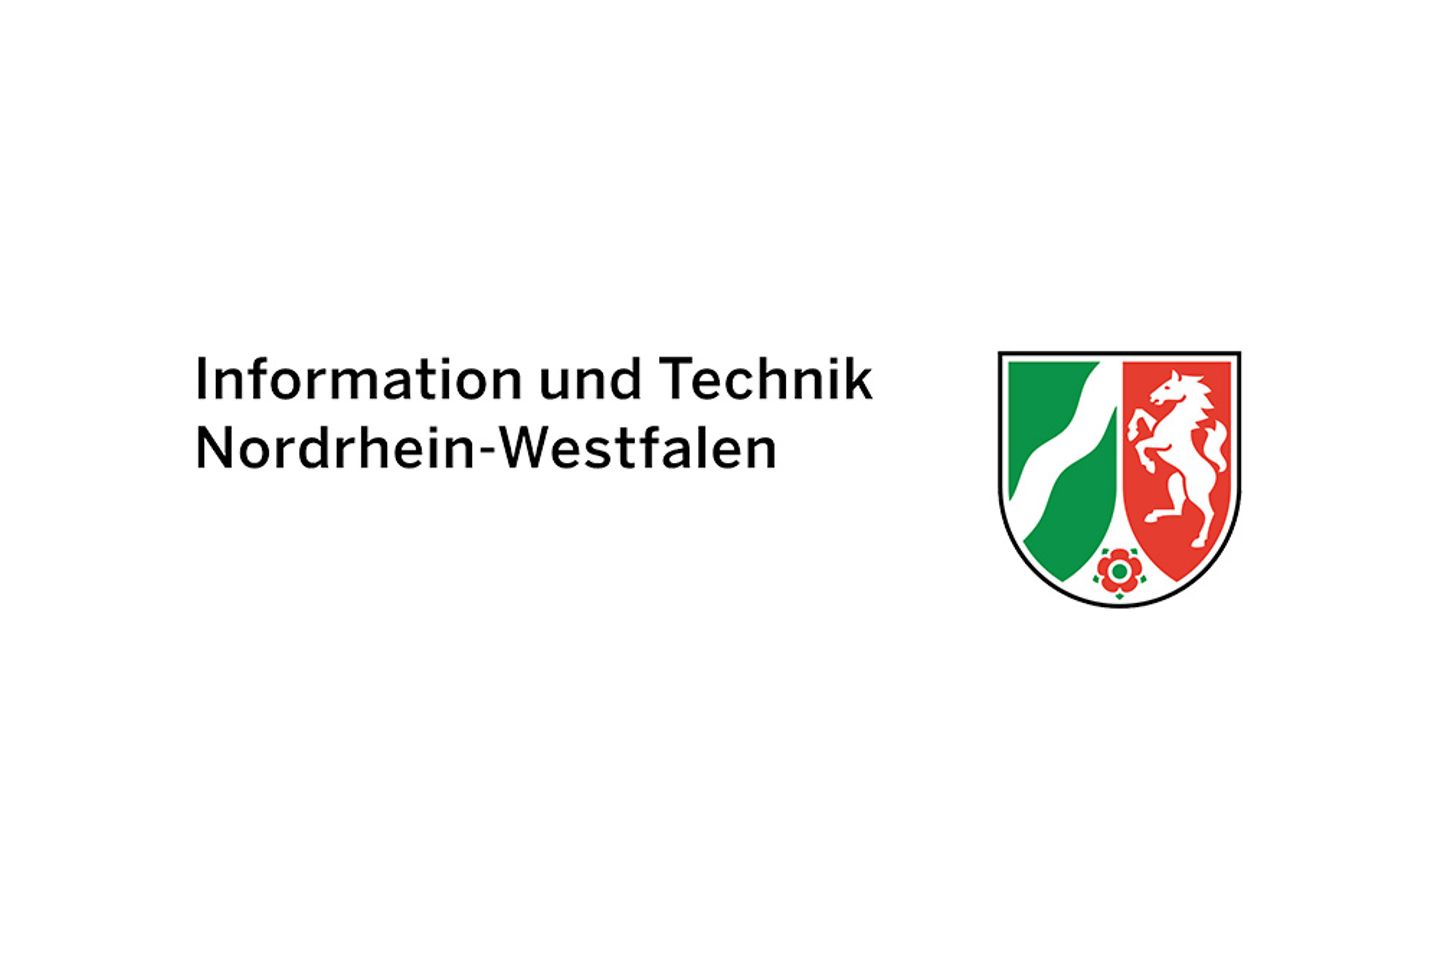 Informações do logo e tecnologia NRW